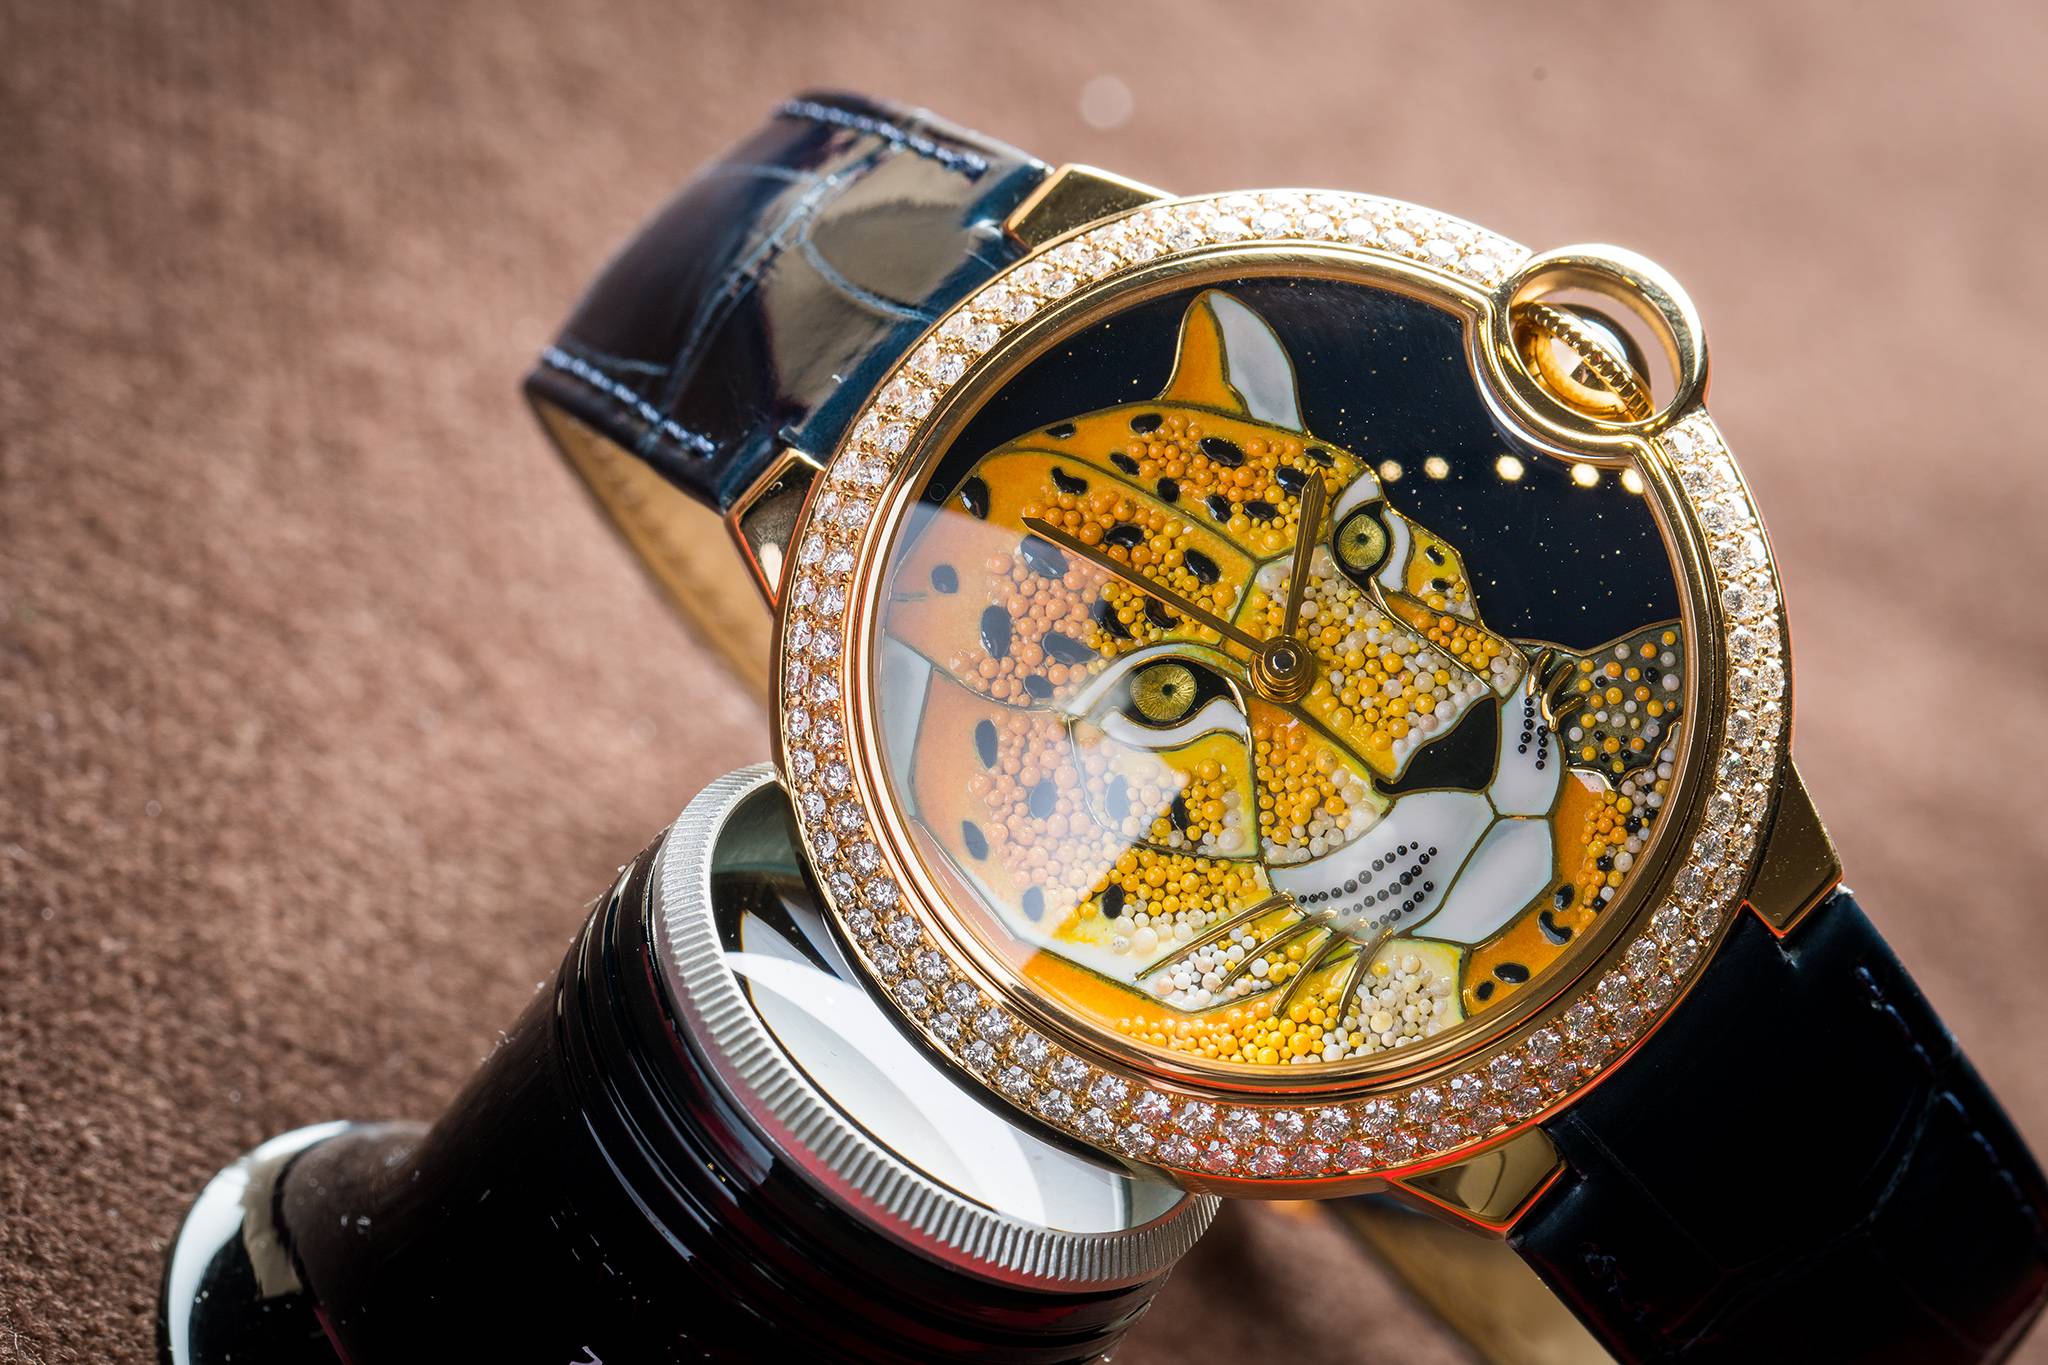 SIHH: Introducing The Ballon Bleu de Cartier Enamel Granulation Watch With Panther Motif